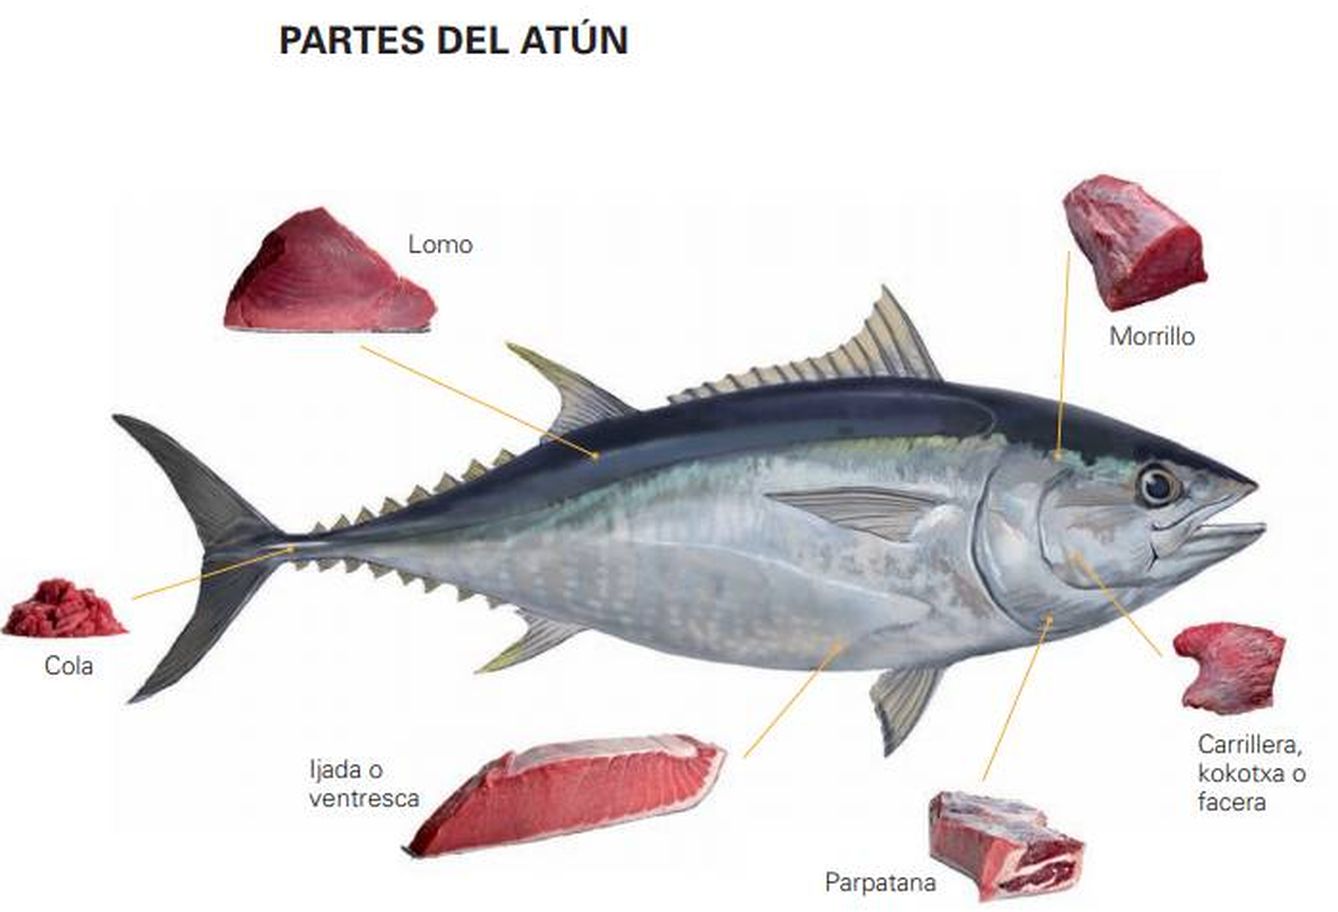 Ilustración de algunas partes comestibles del atún rojo del Atlántico. (G. Balfegó)